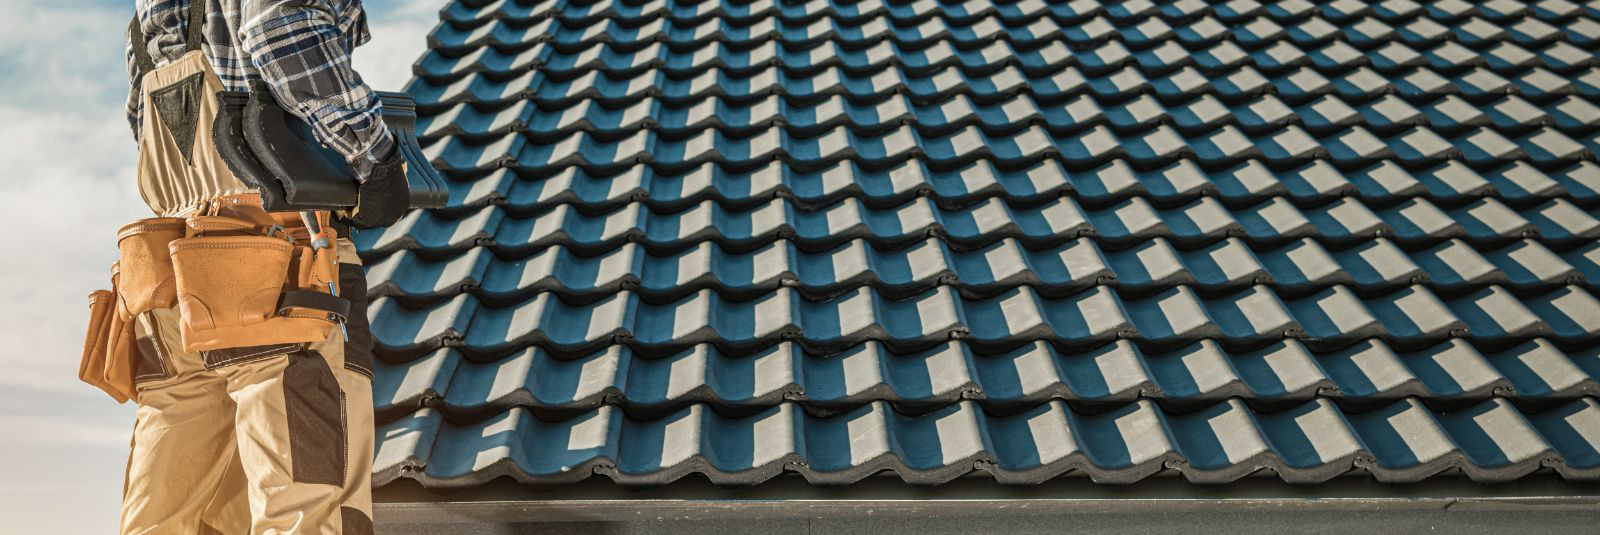 Kui olete oma kodu või ärihoone katuse katmise valikul, seisate silmitsi mitmete võimalustega. Üks neist võimalustest on kivikatus, mis pakub teile mitmeid eeli